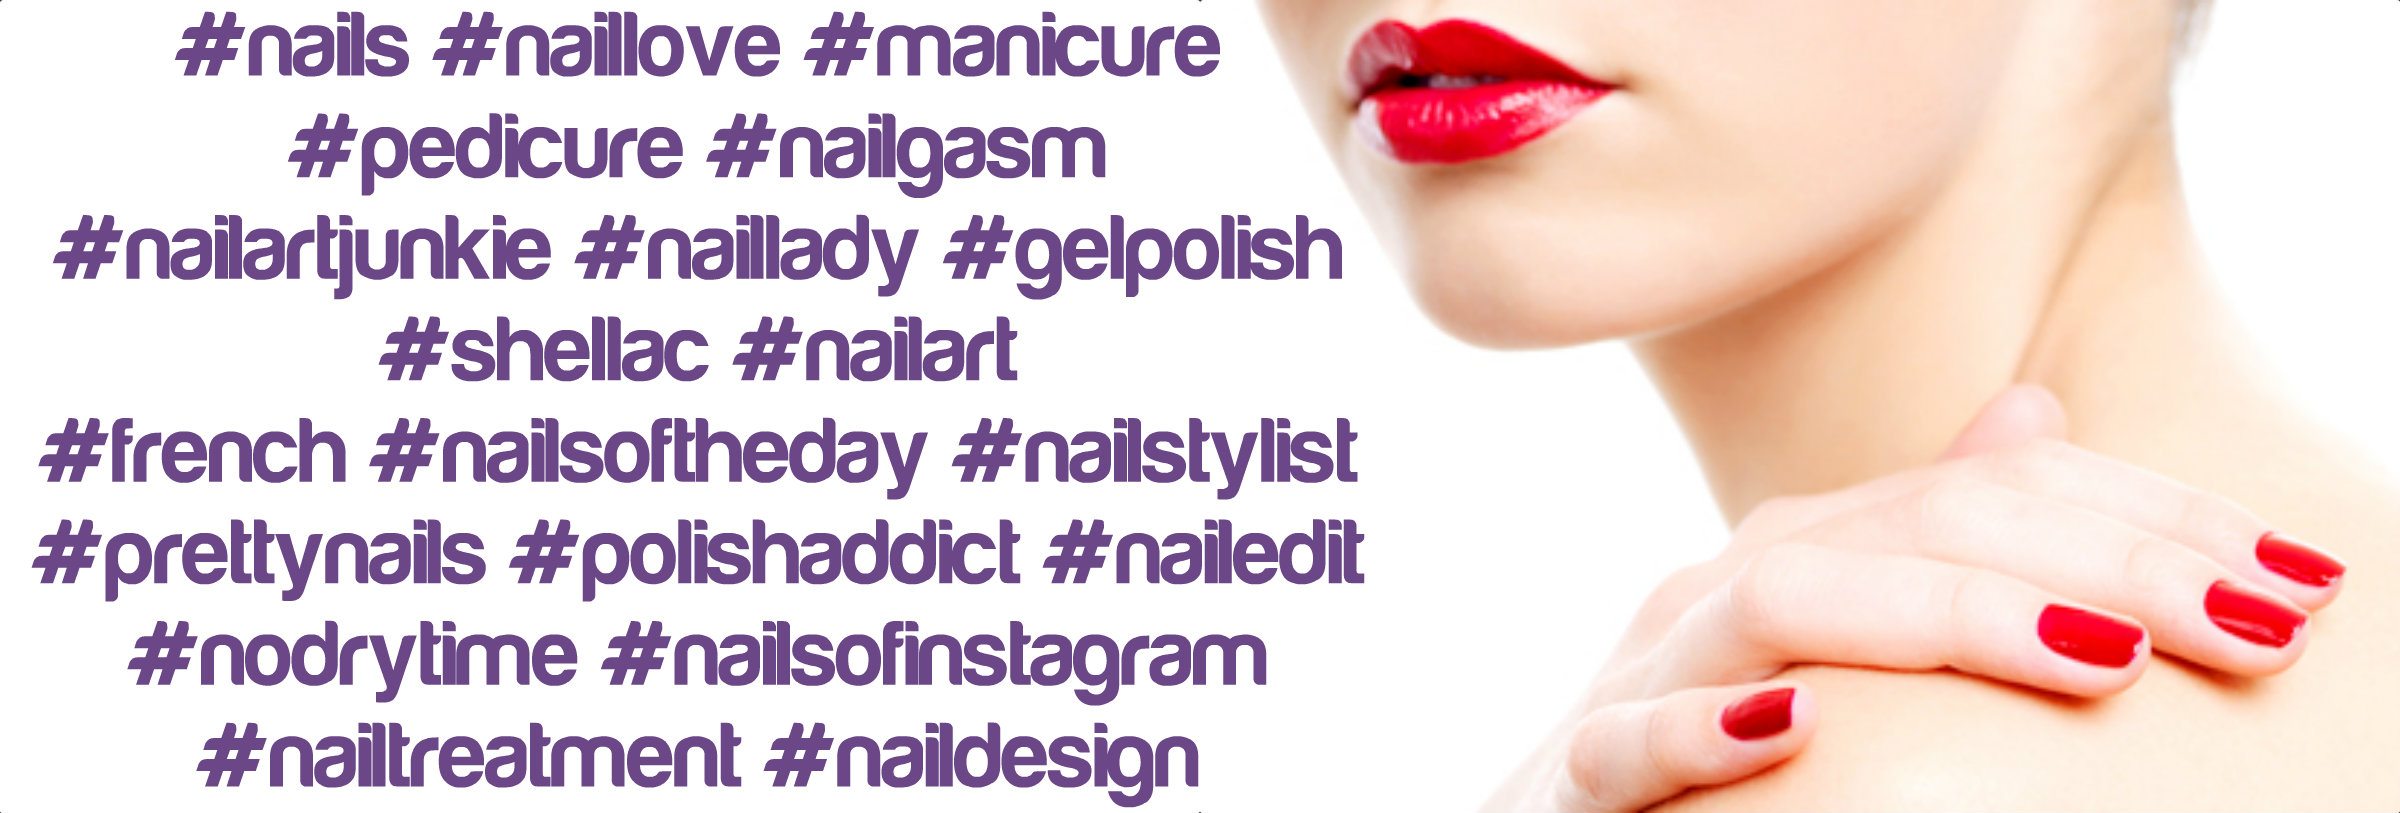 nails-salon-hashtag